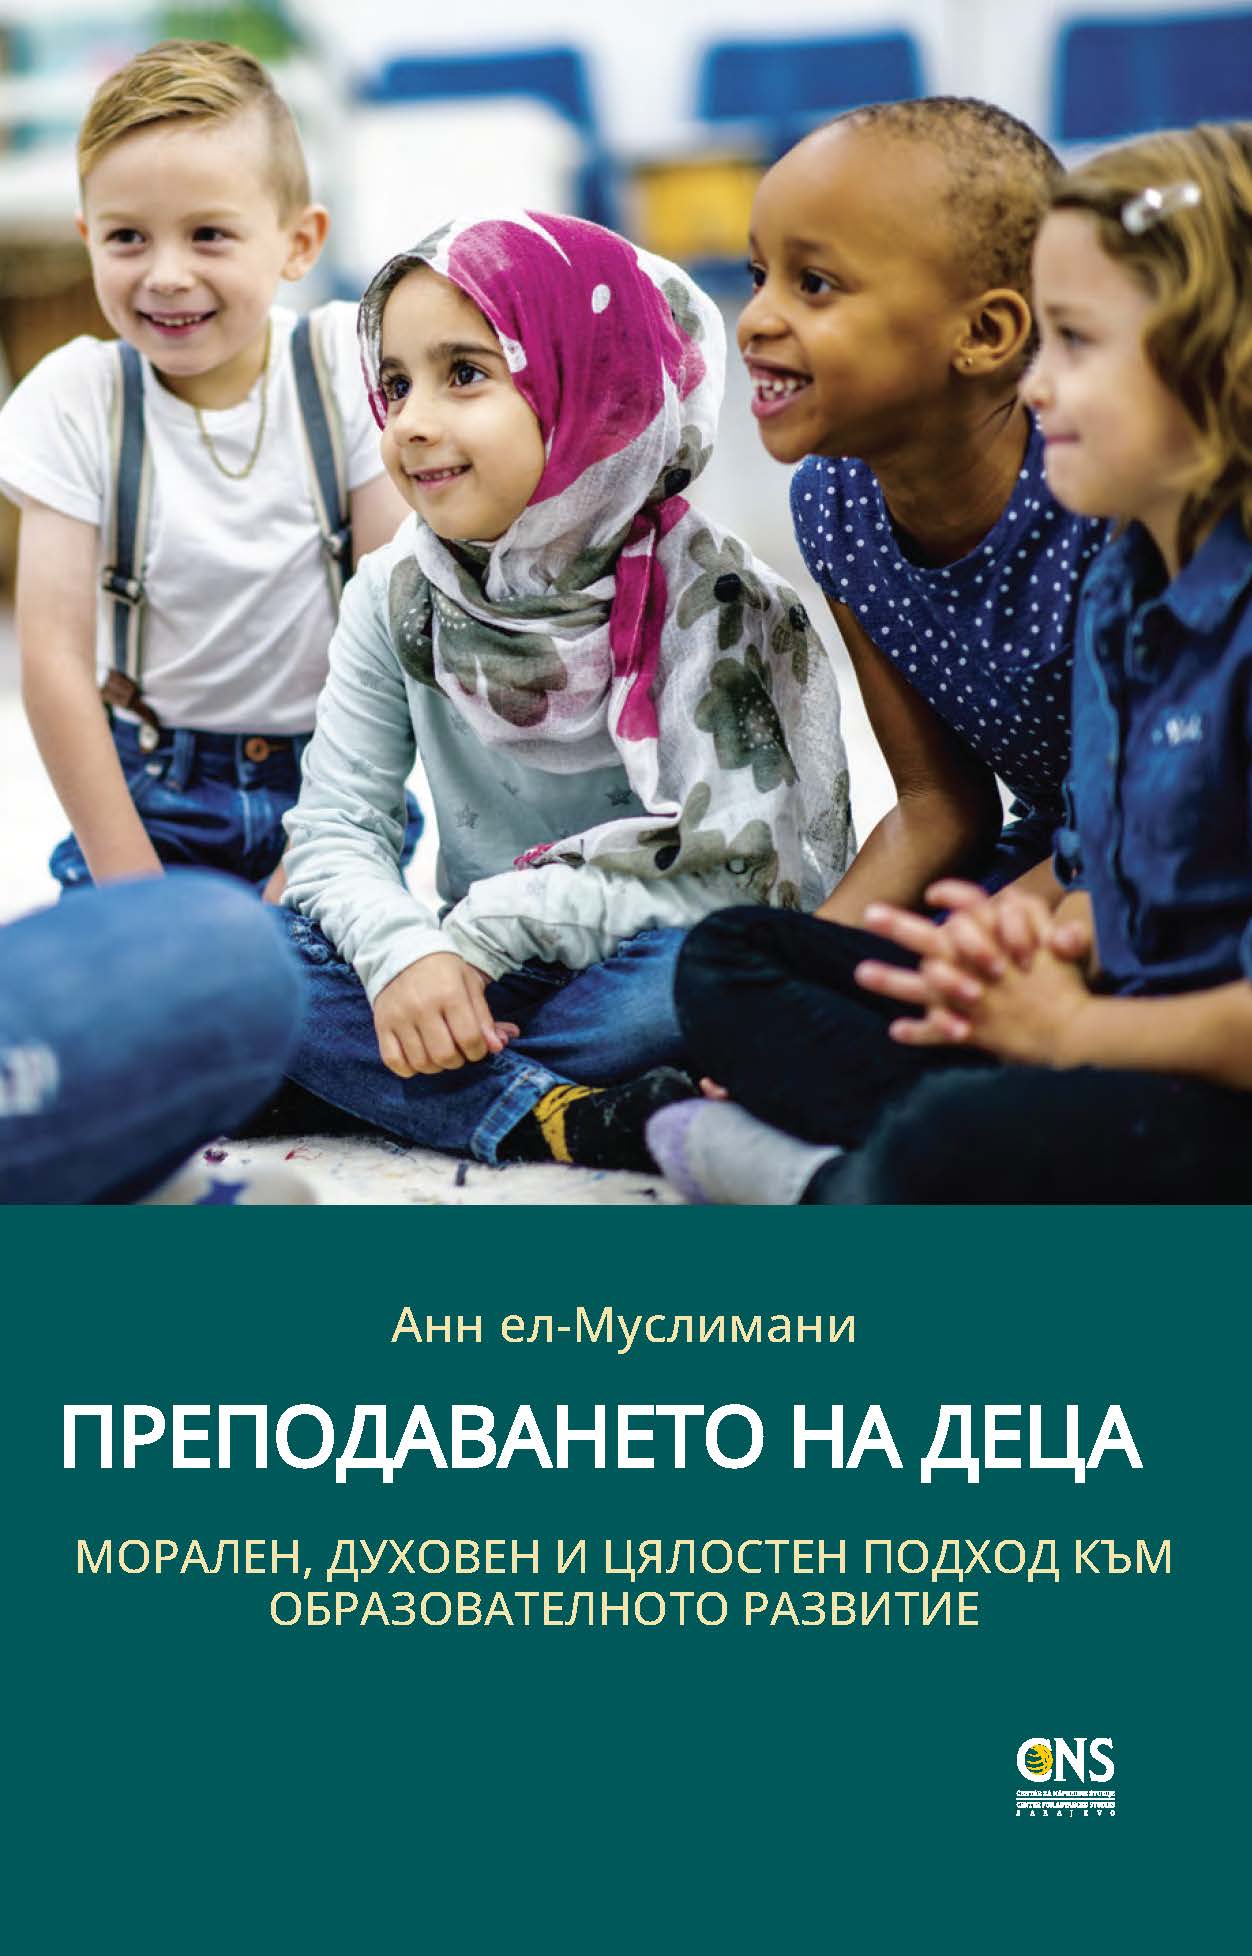 Bulgarian: Преподаването на деца: морален, духовен и цялостен подход към образователното развитие (Teaching Children: A Moral, Spiritual, and Holistic Approach to Educational Development)